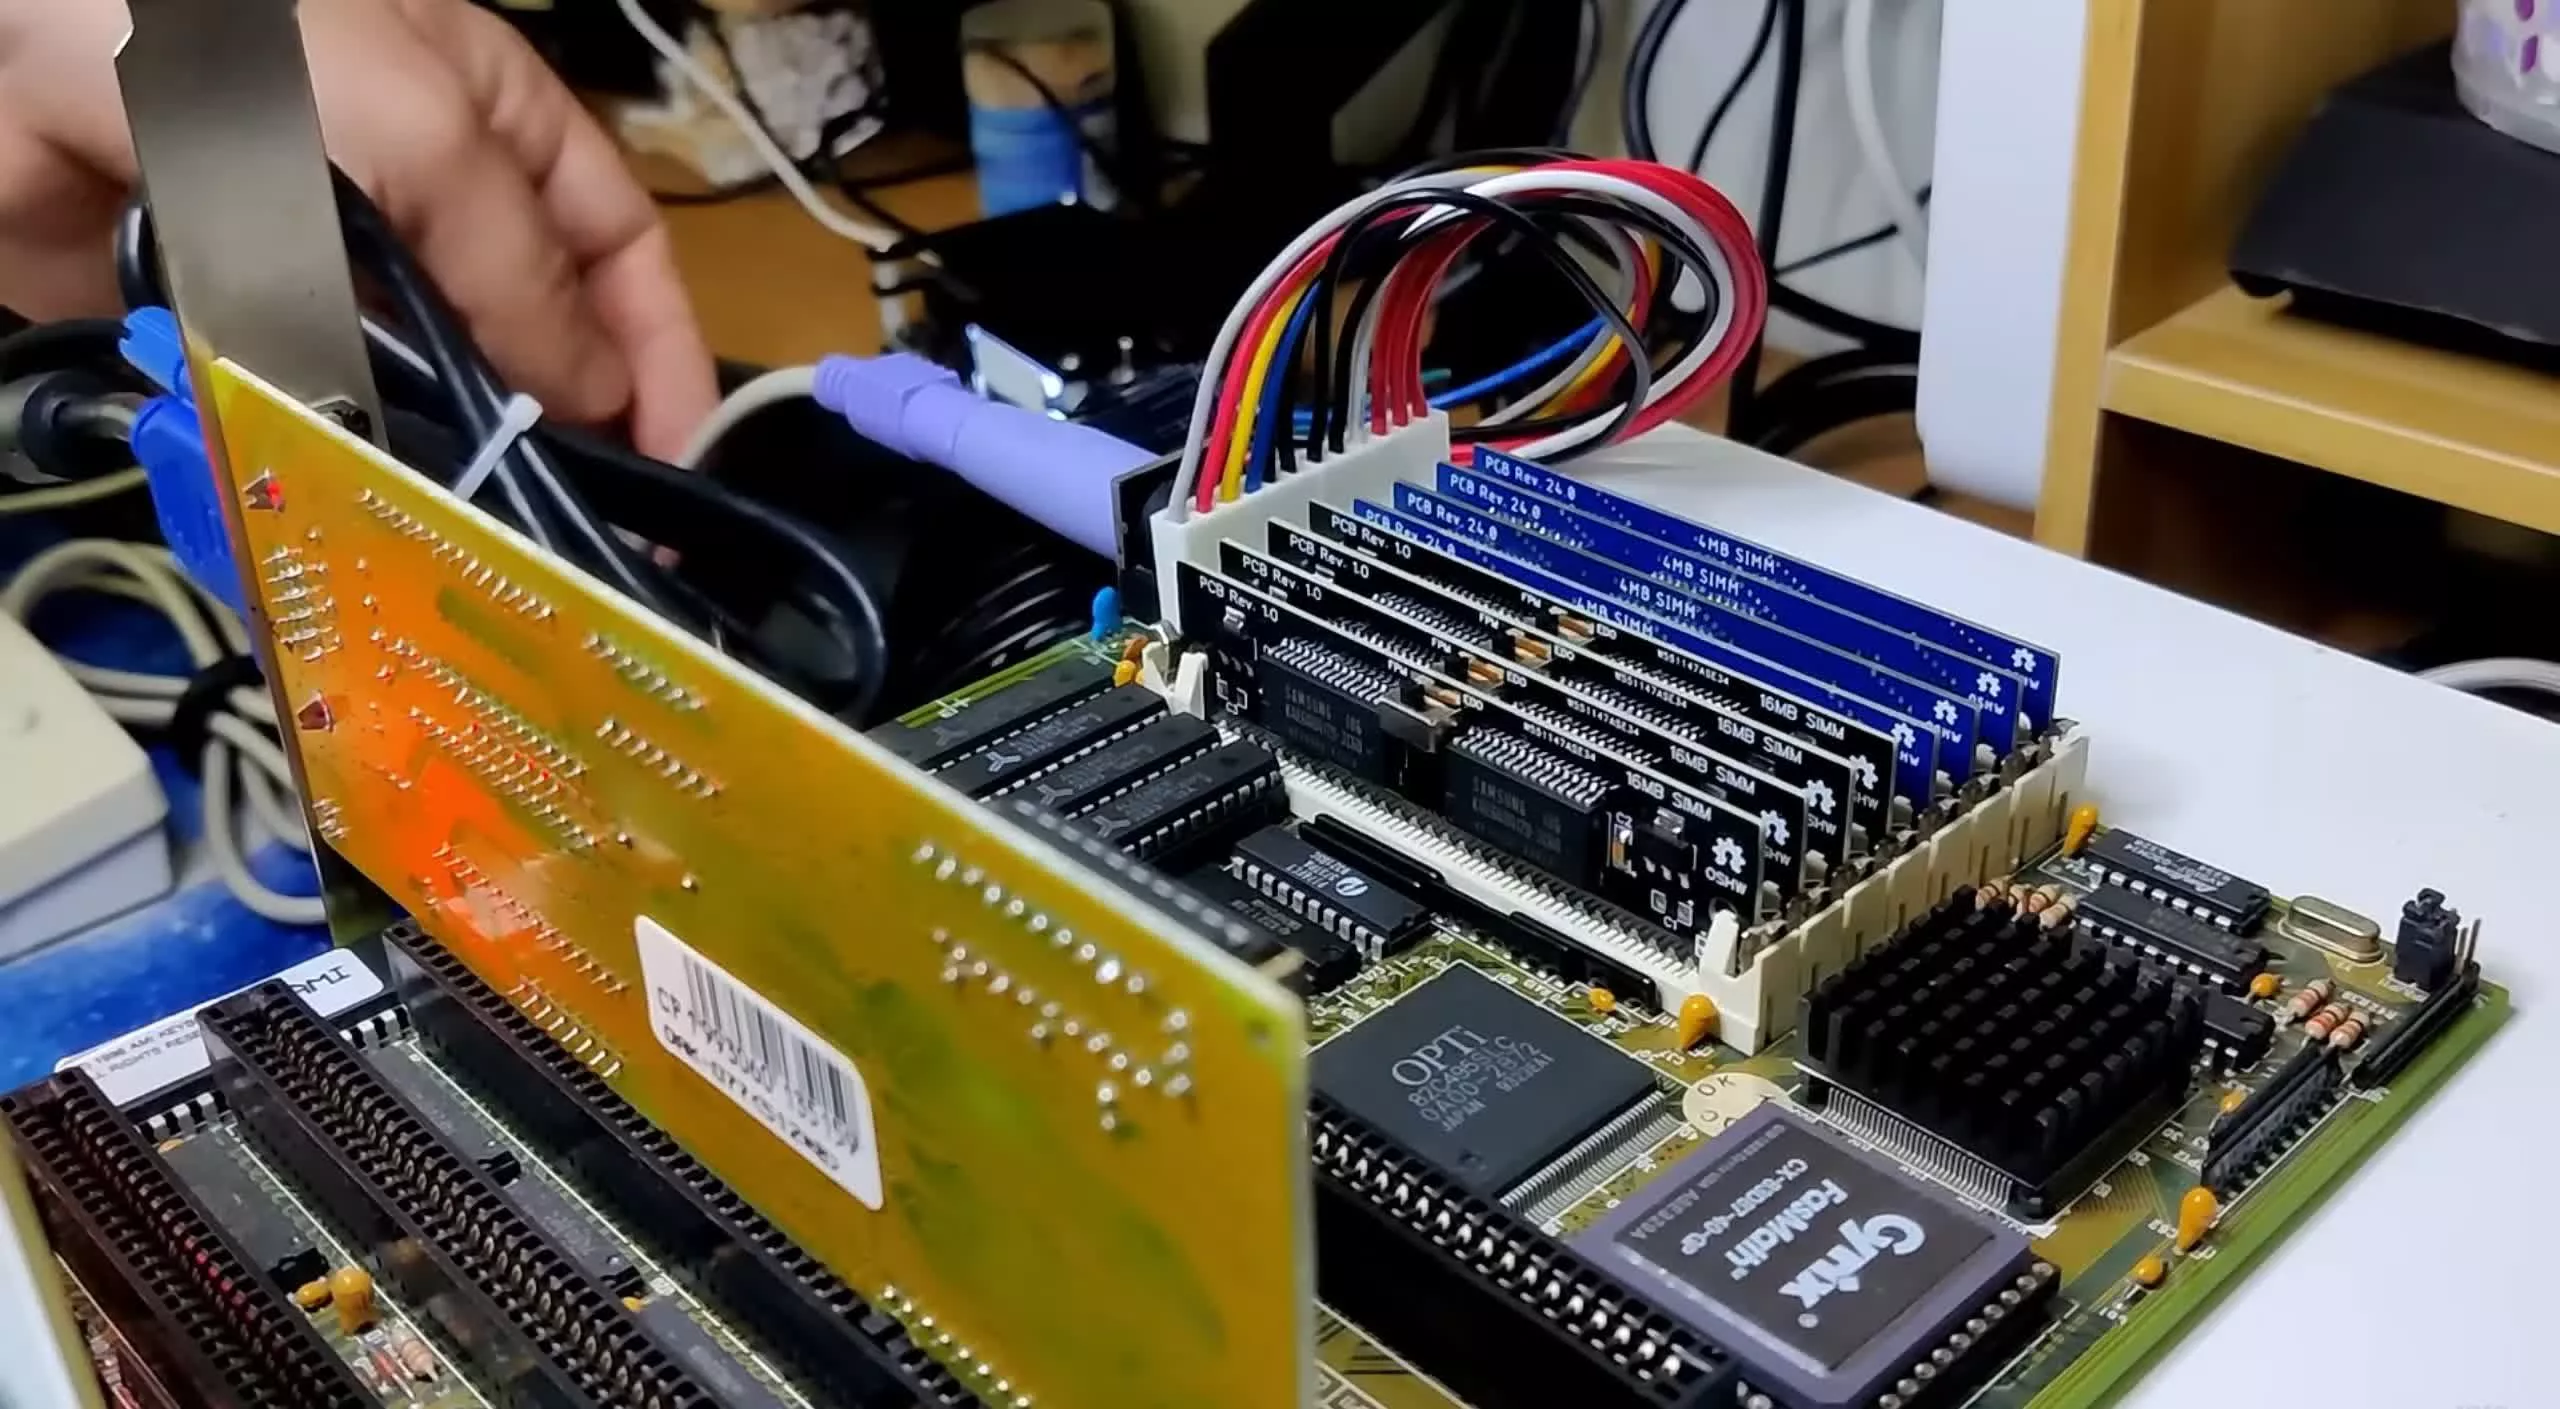 Construye tu propia RAM: Cómo actualizar una PC 386 antigua a 64 MB de RAM usando memoria personalizada